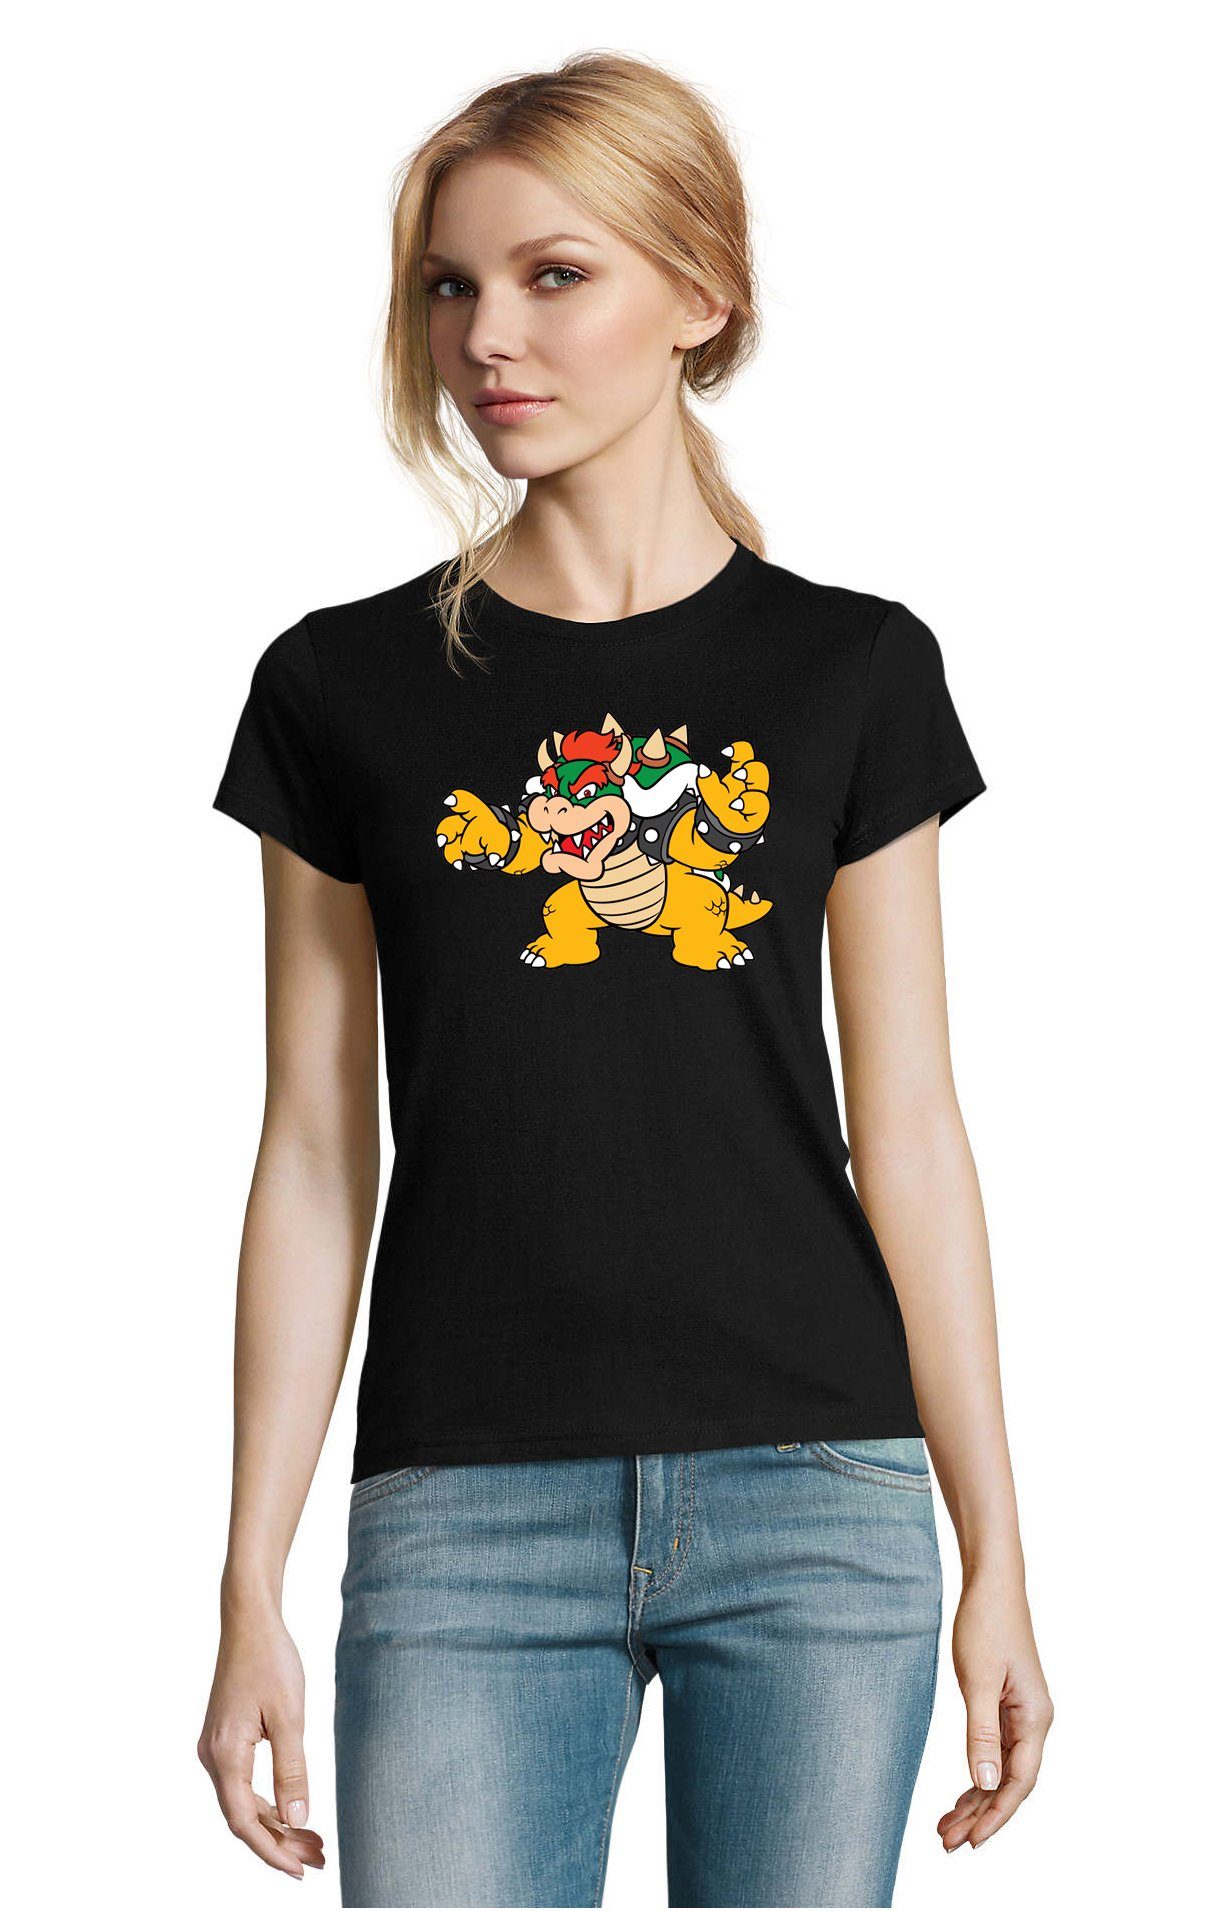 Blondie & Brownie T-Shirt Damen Bowser Mario Yoshi Luigi Game Gamer Gaming Konsole Retro